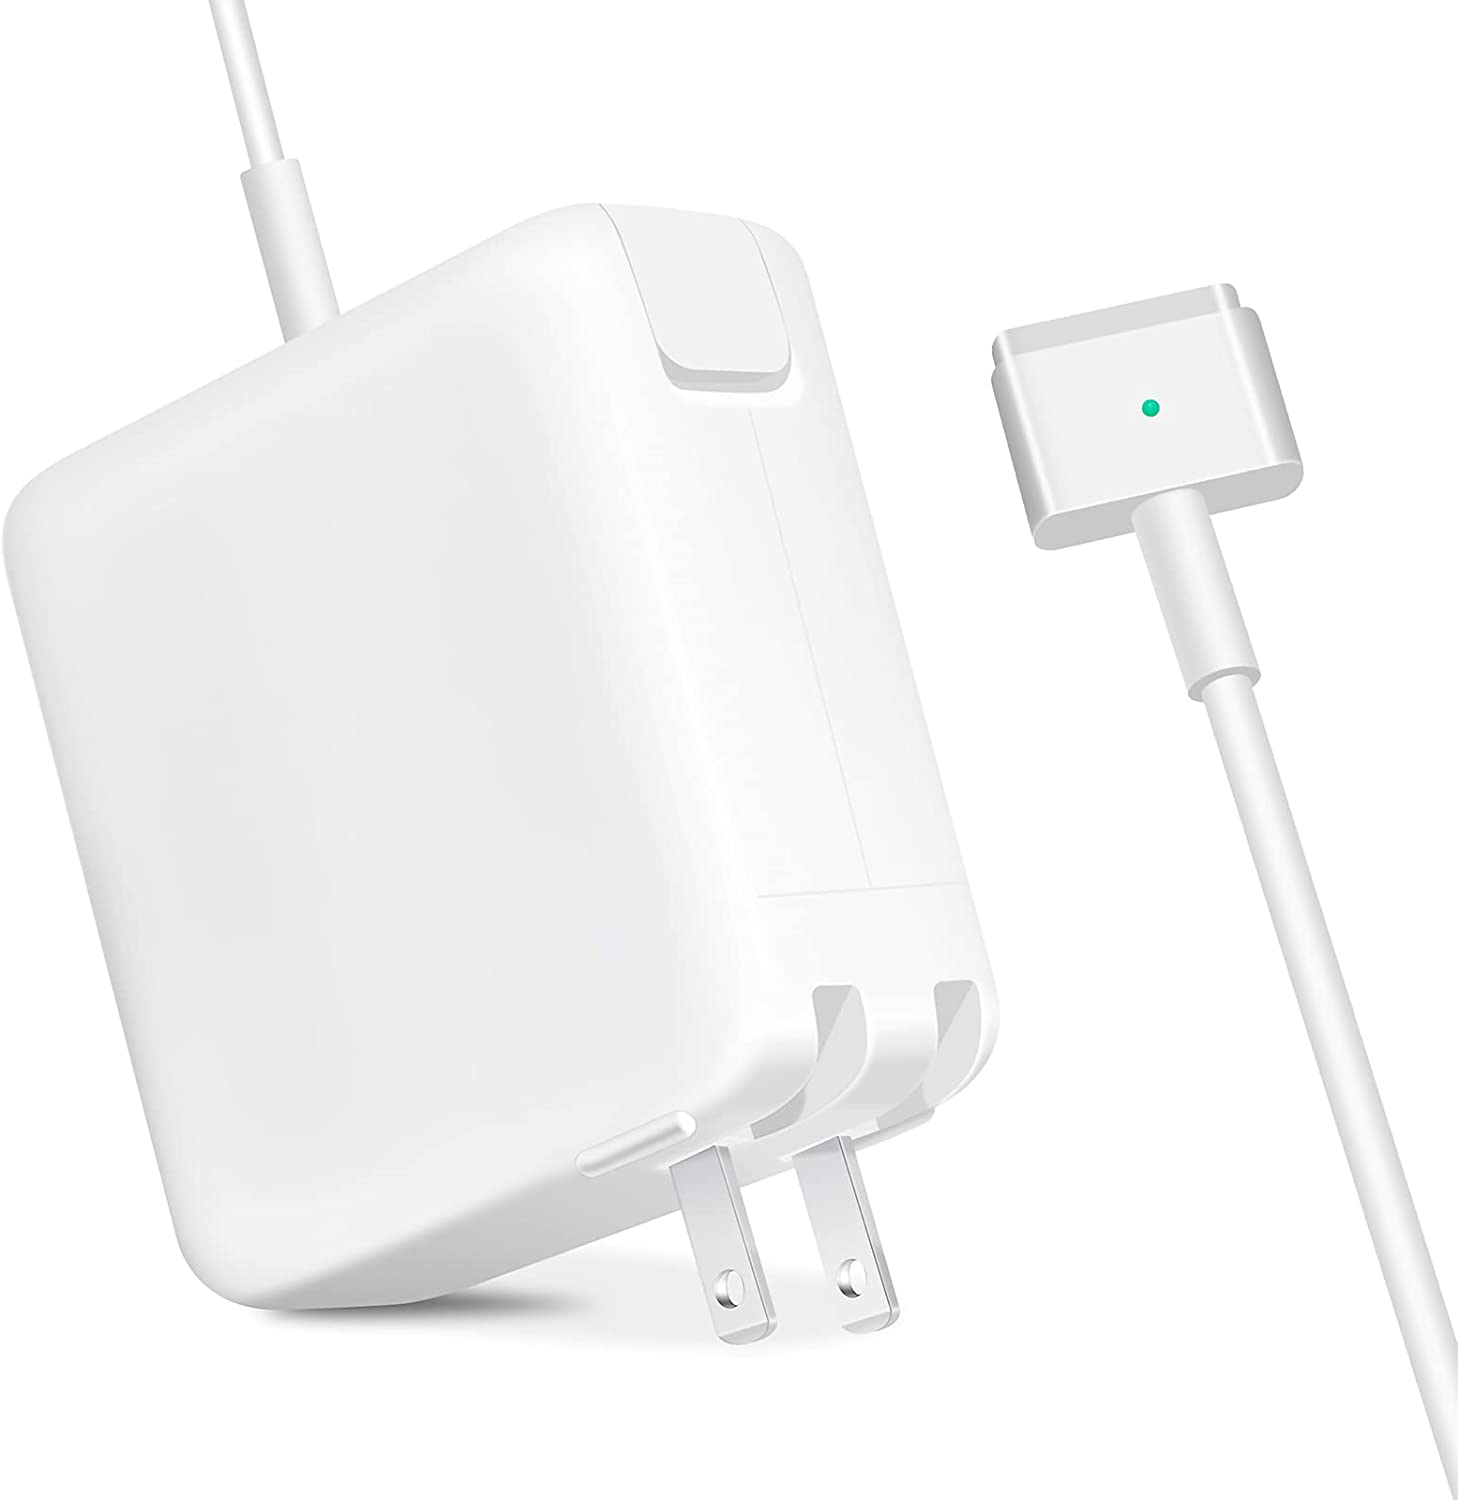 Økologi Trænge ind Menstruation Macbook Charger - 45W Magsafe 2 Power Adapter for MacBook Air 2012 - 2